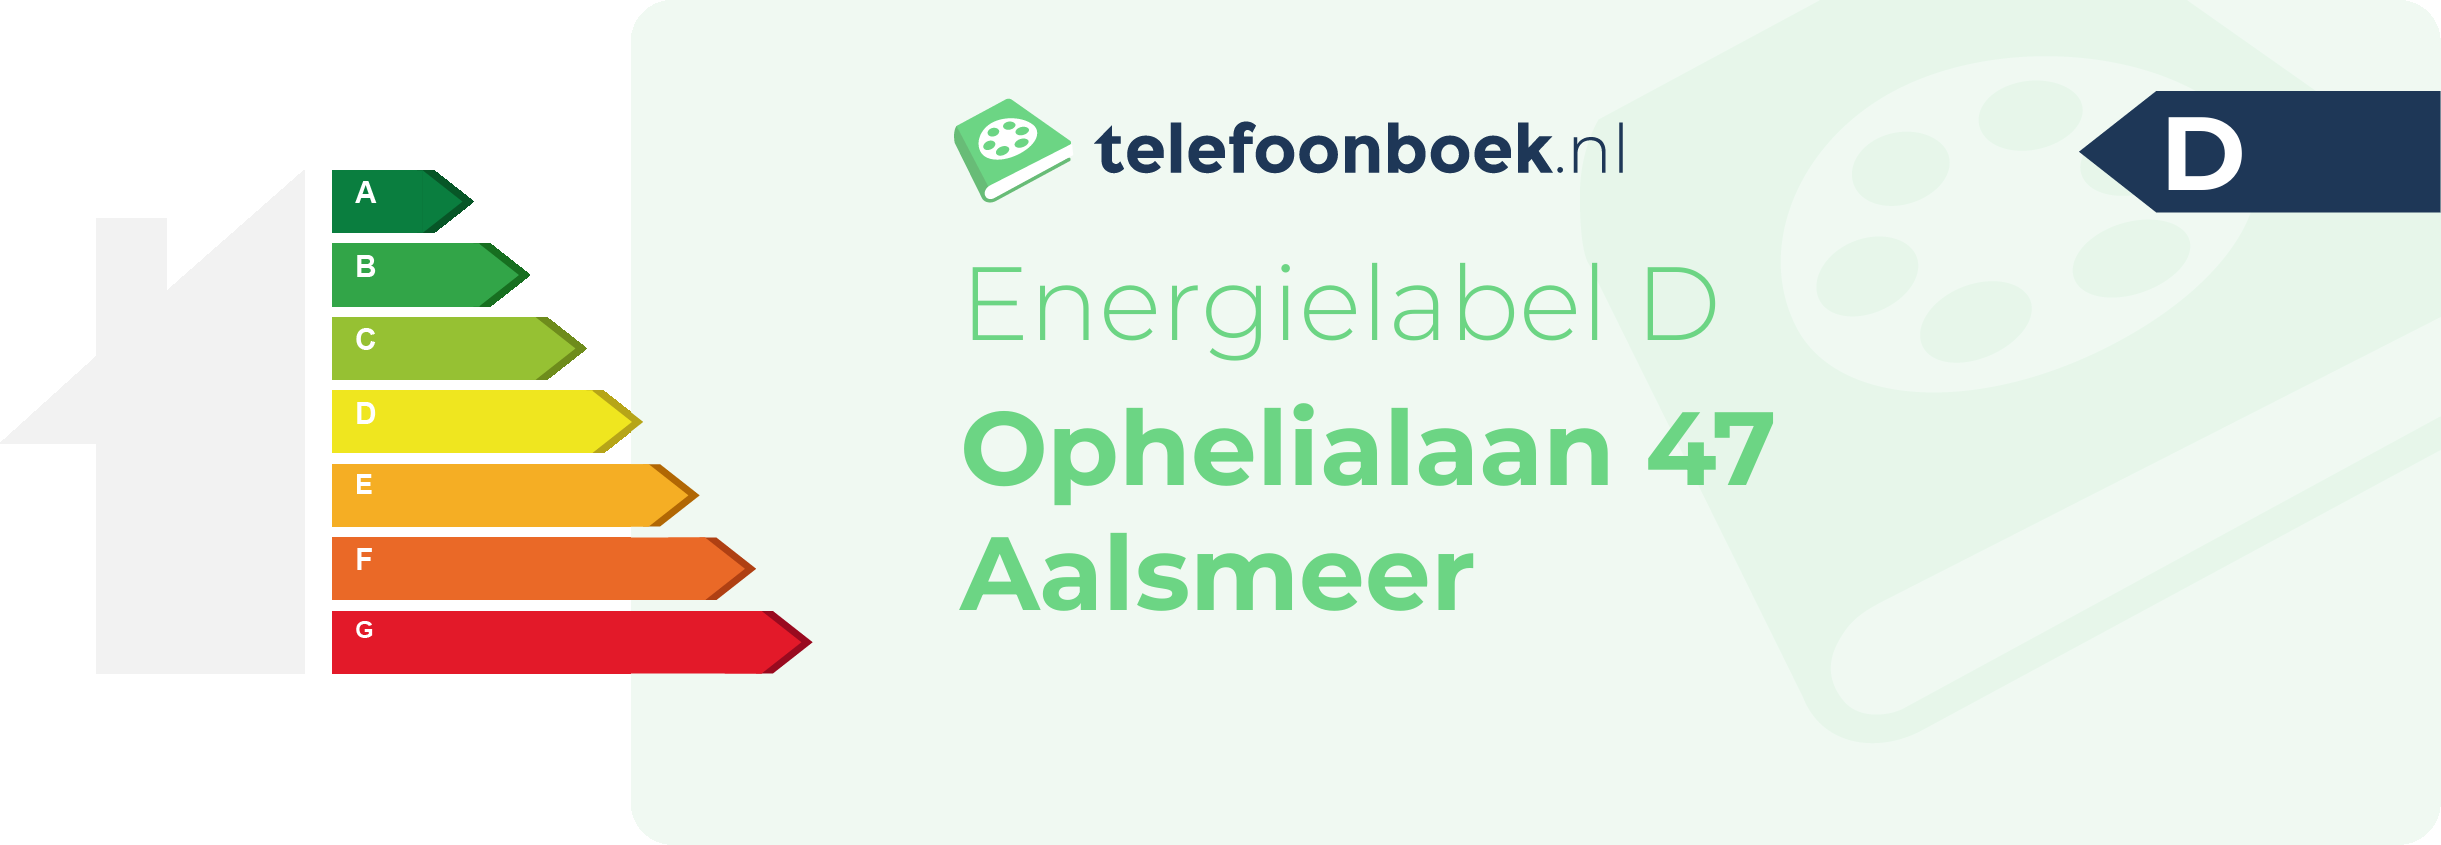 Energielabel Ophelialaan 47 Aalsmeer